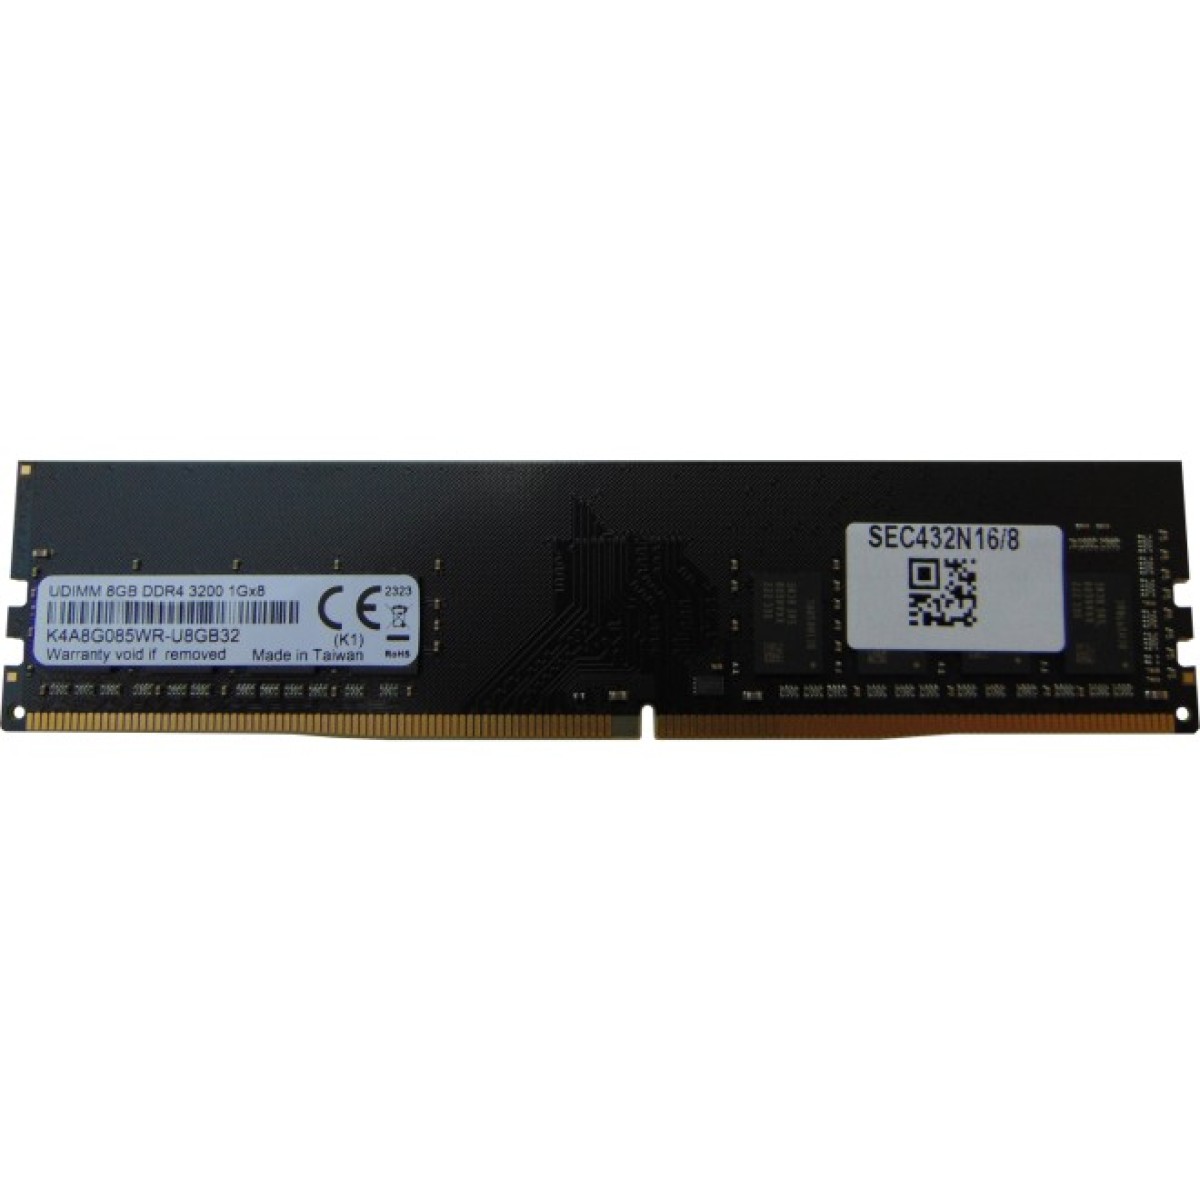 Модуль памяти для компьютера DDR4 8GB 3200 MHz Samsung (SEC432N16/8) 256_256.jpg